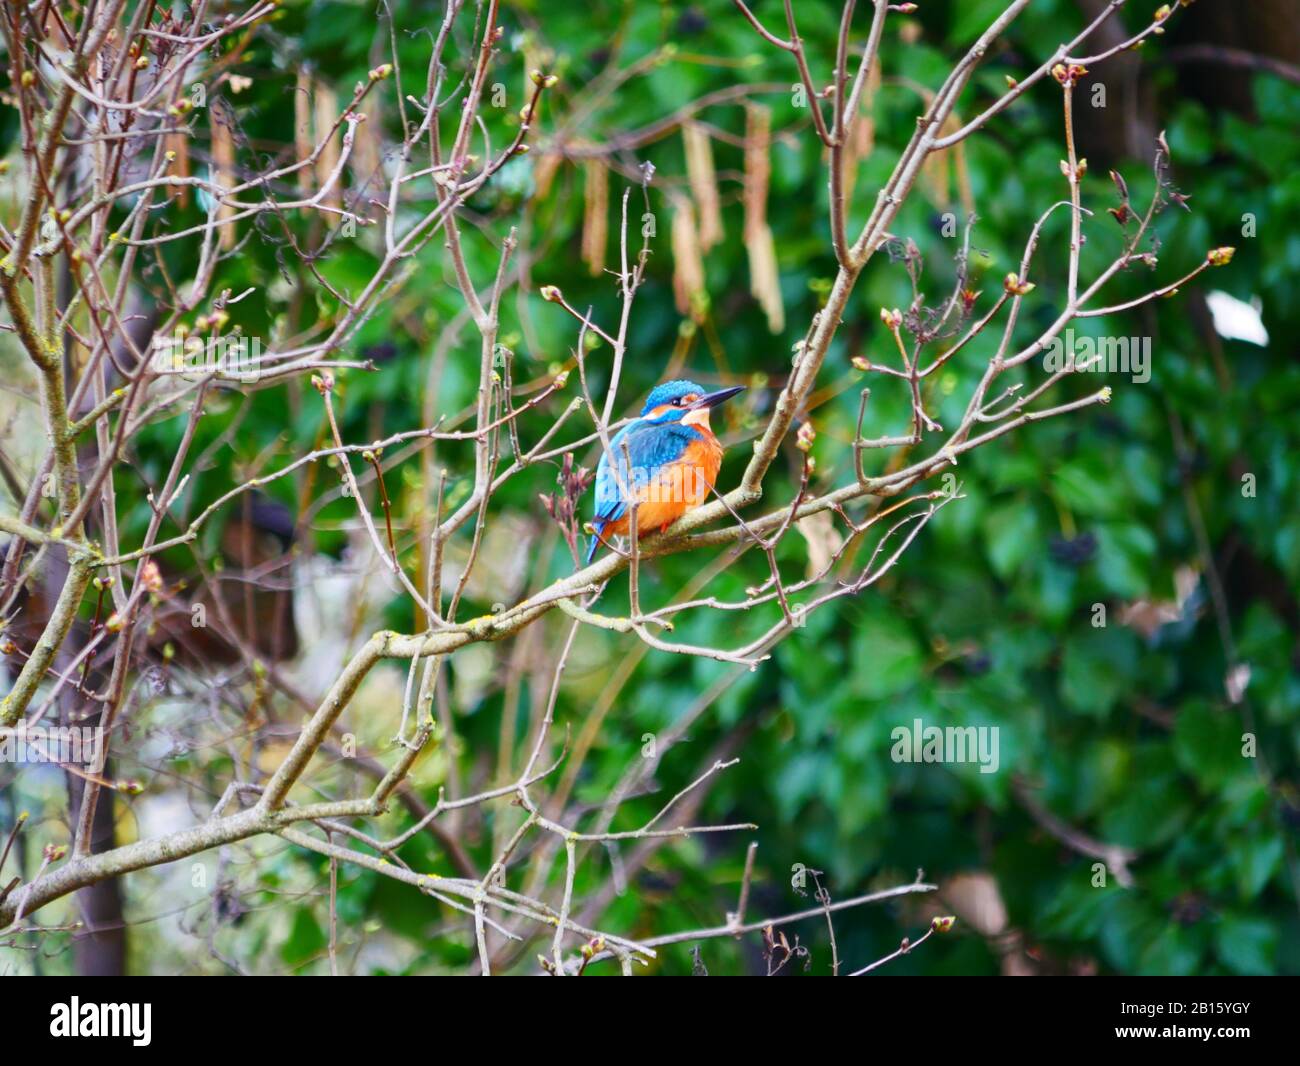 Ulm, Germany: A kingfisher bird in the Fishermen's quartier (Fischerviertel) Stock Photo